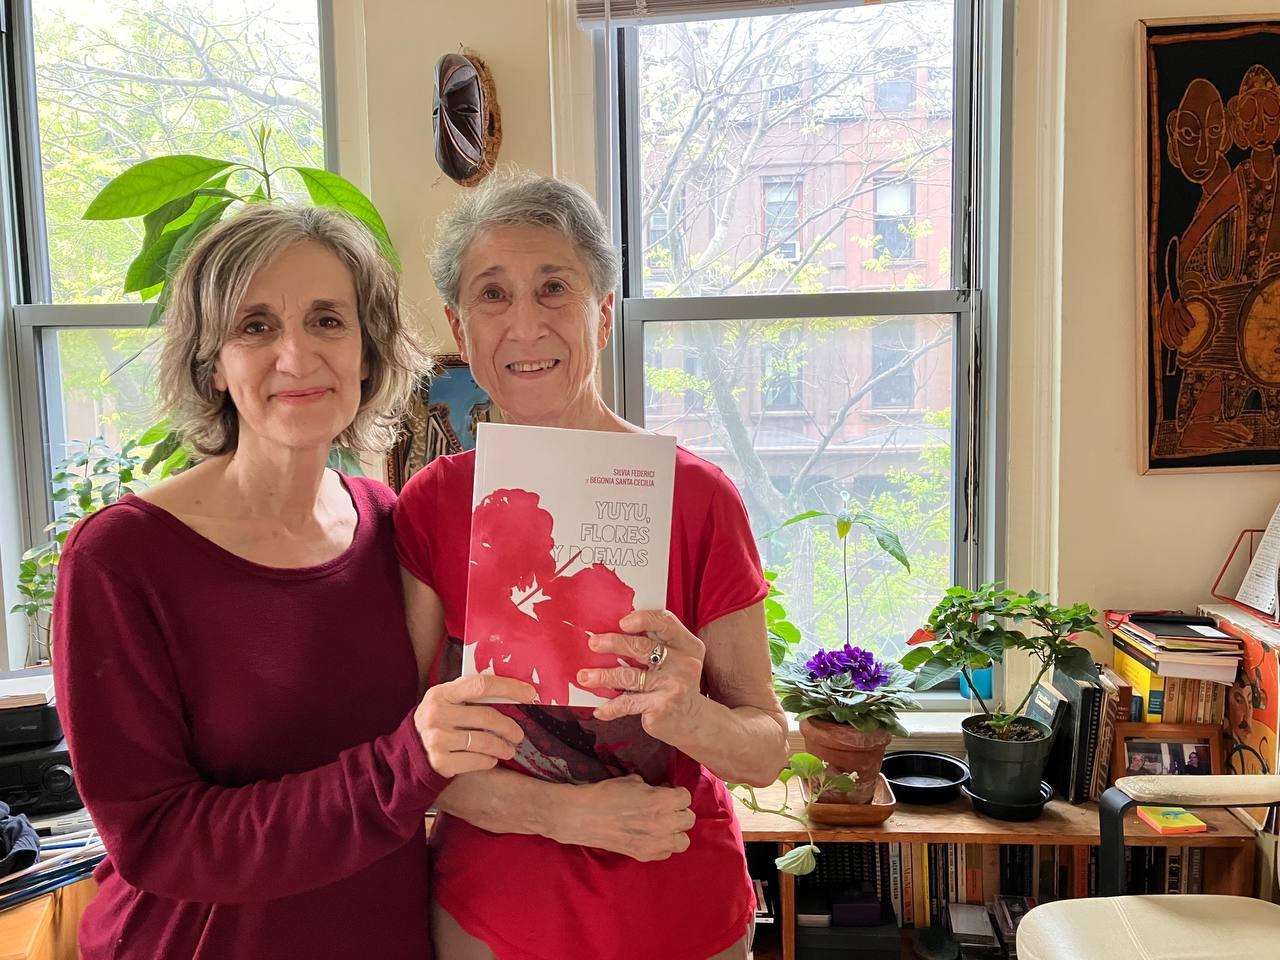 Begonia Santa-Cecilia y Silvia Federici muestran su libro 'Yuyu, flores y poemas'. Posan cercanas, en un ligero abrazo, ambas vestidas de tonos de rojo, que combinan con la portada. Están en un departamento iluminado por el sol, decorado con plantas.